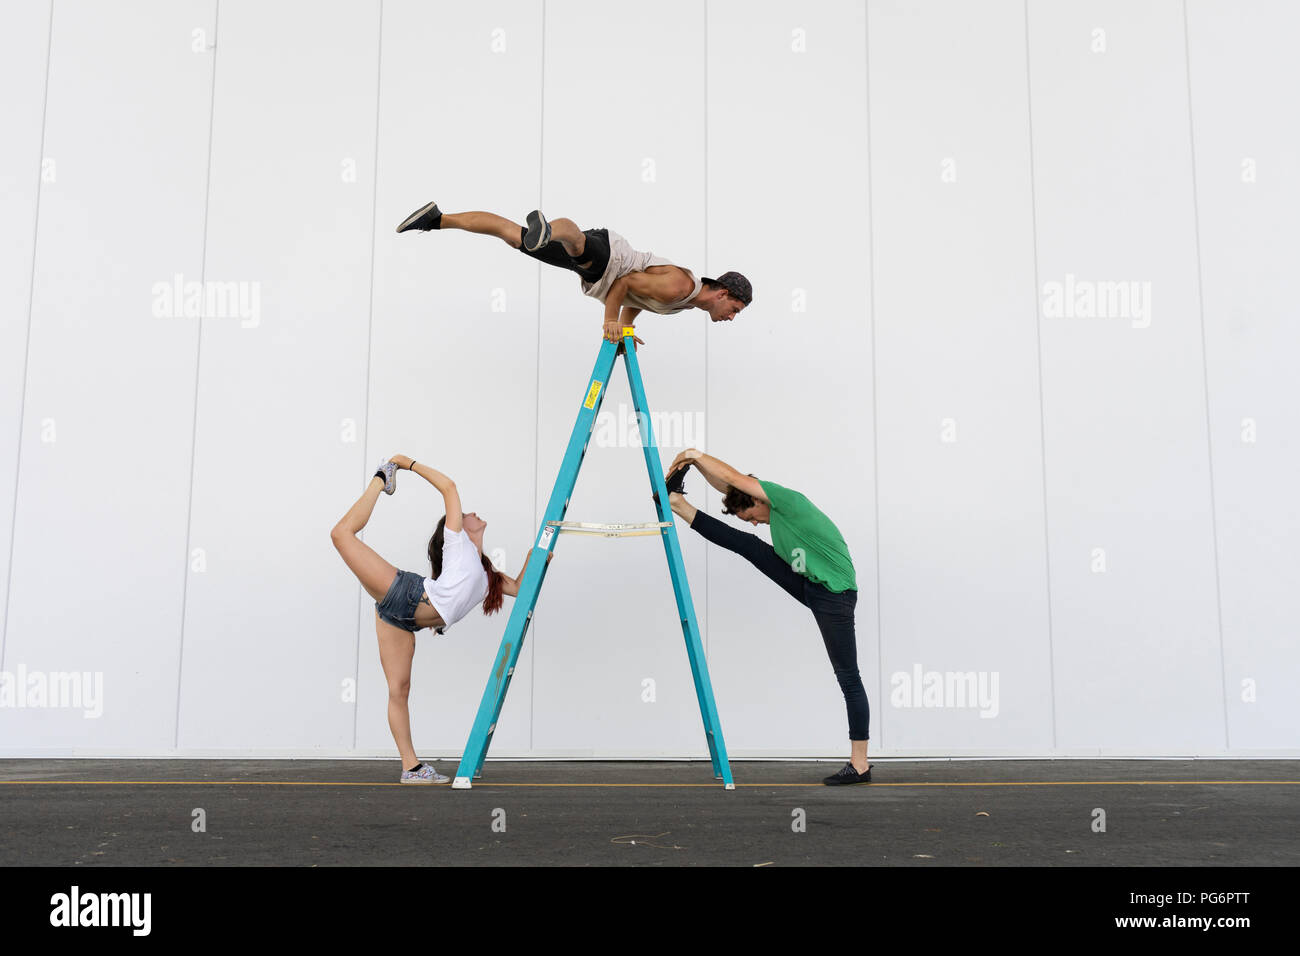 Drei Akrobaten Tricks auf einer Leiter Stockfoto